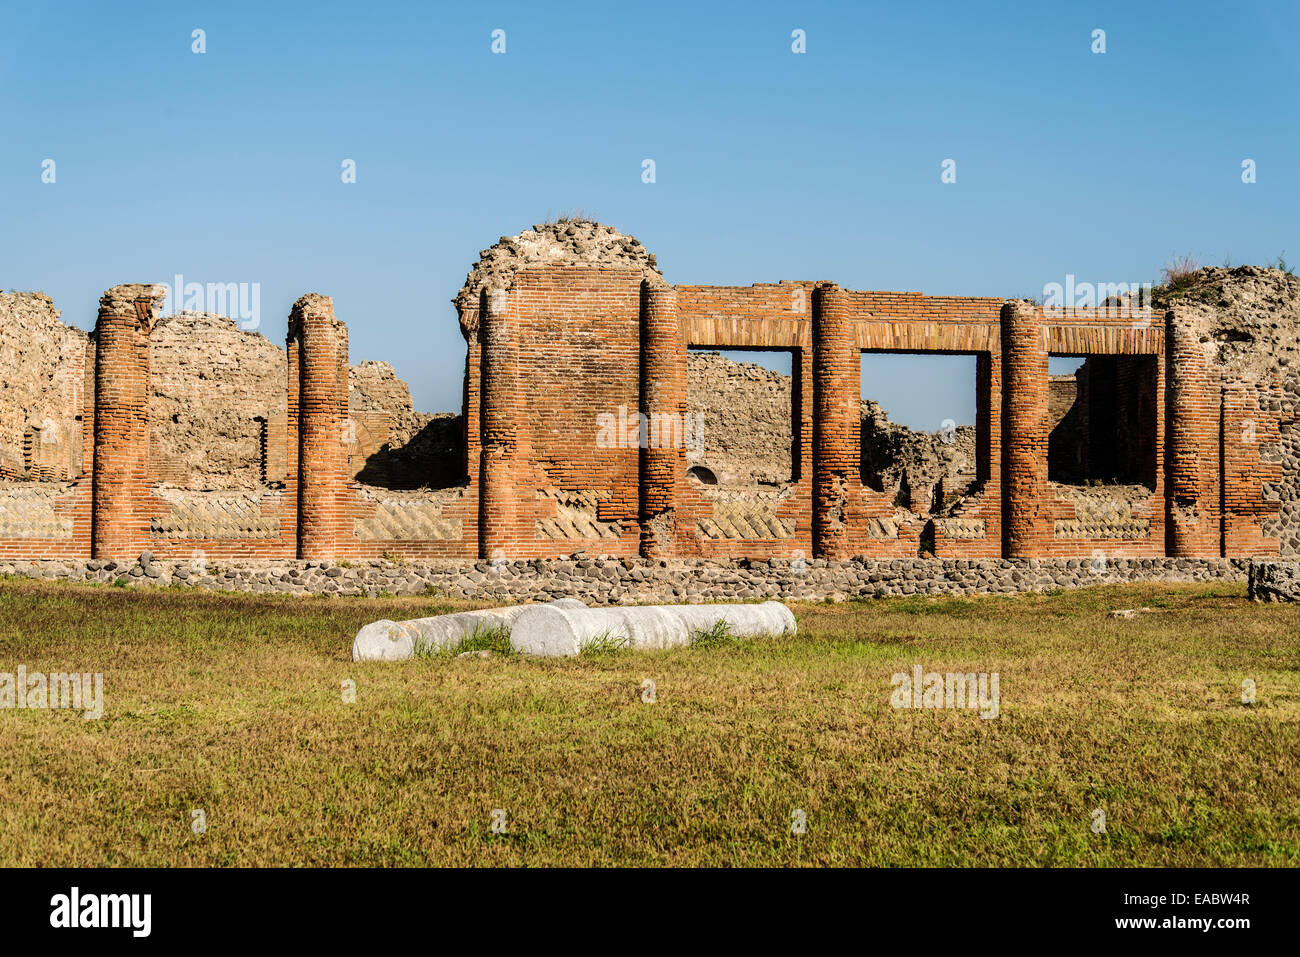 Ruines archéologiques romaines de la cité perdue de Pompéi, Italie Banque D'Images